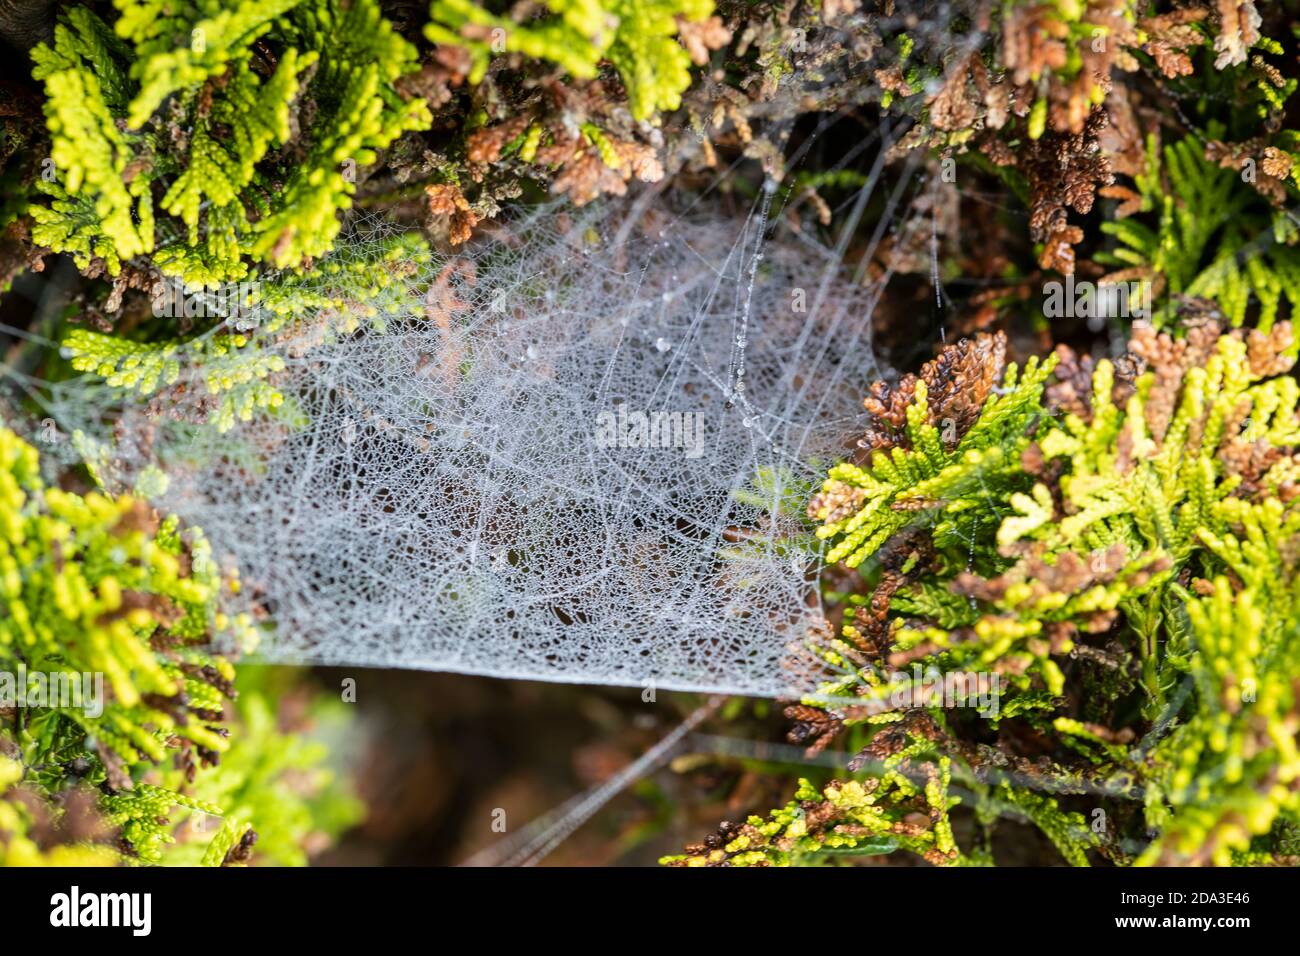 Ein Spinnennetz (Arachnida) drehte sich, um fallende Beute zu fangen Und stark beladen mit herbstlicher Feuchtigkeit und Tau am Basis eines Nadelbaums Stockfoto